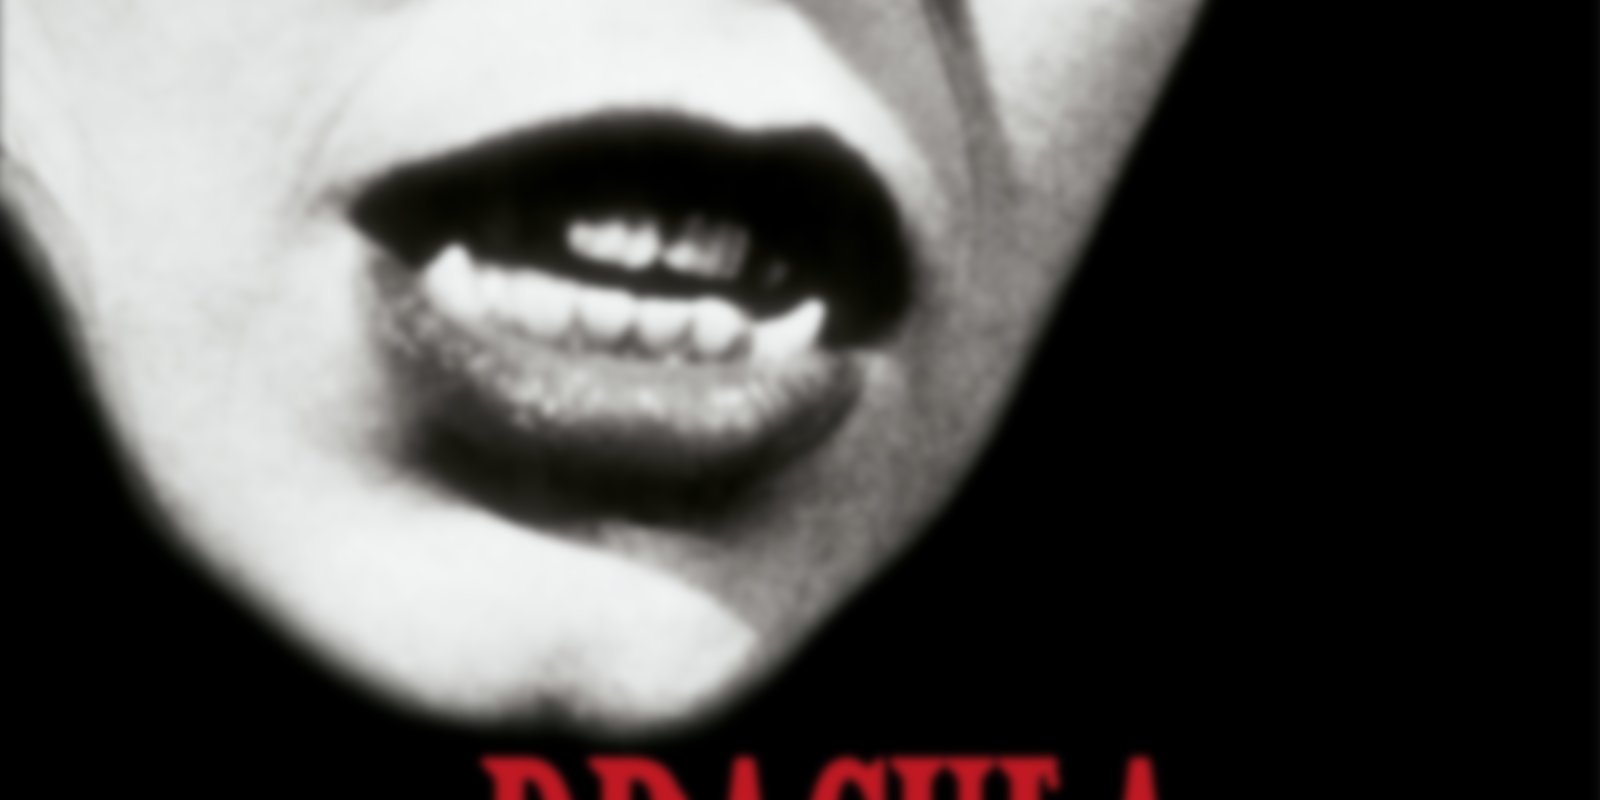 Draculas Witwe